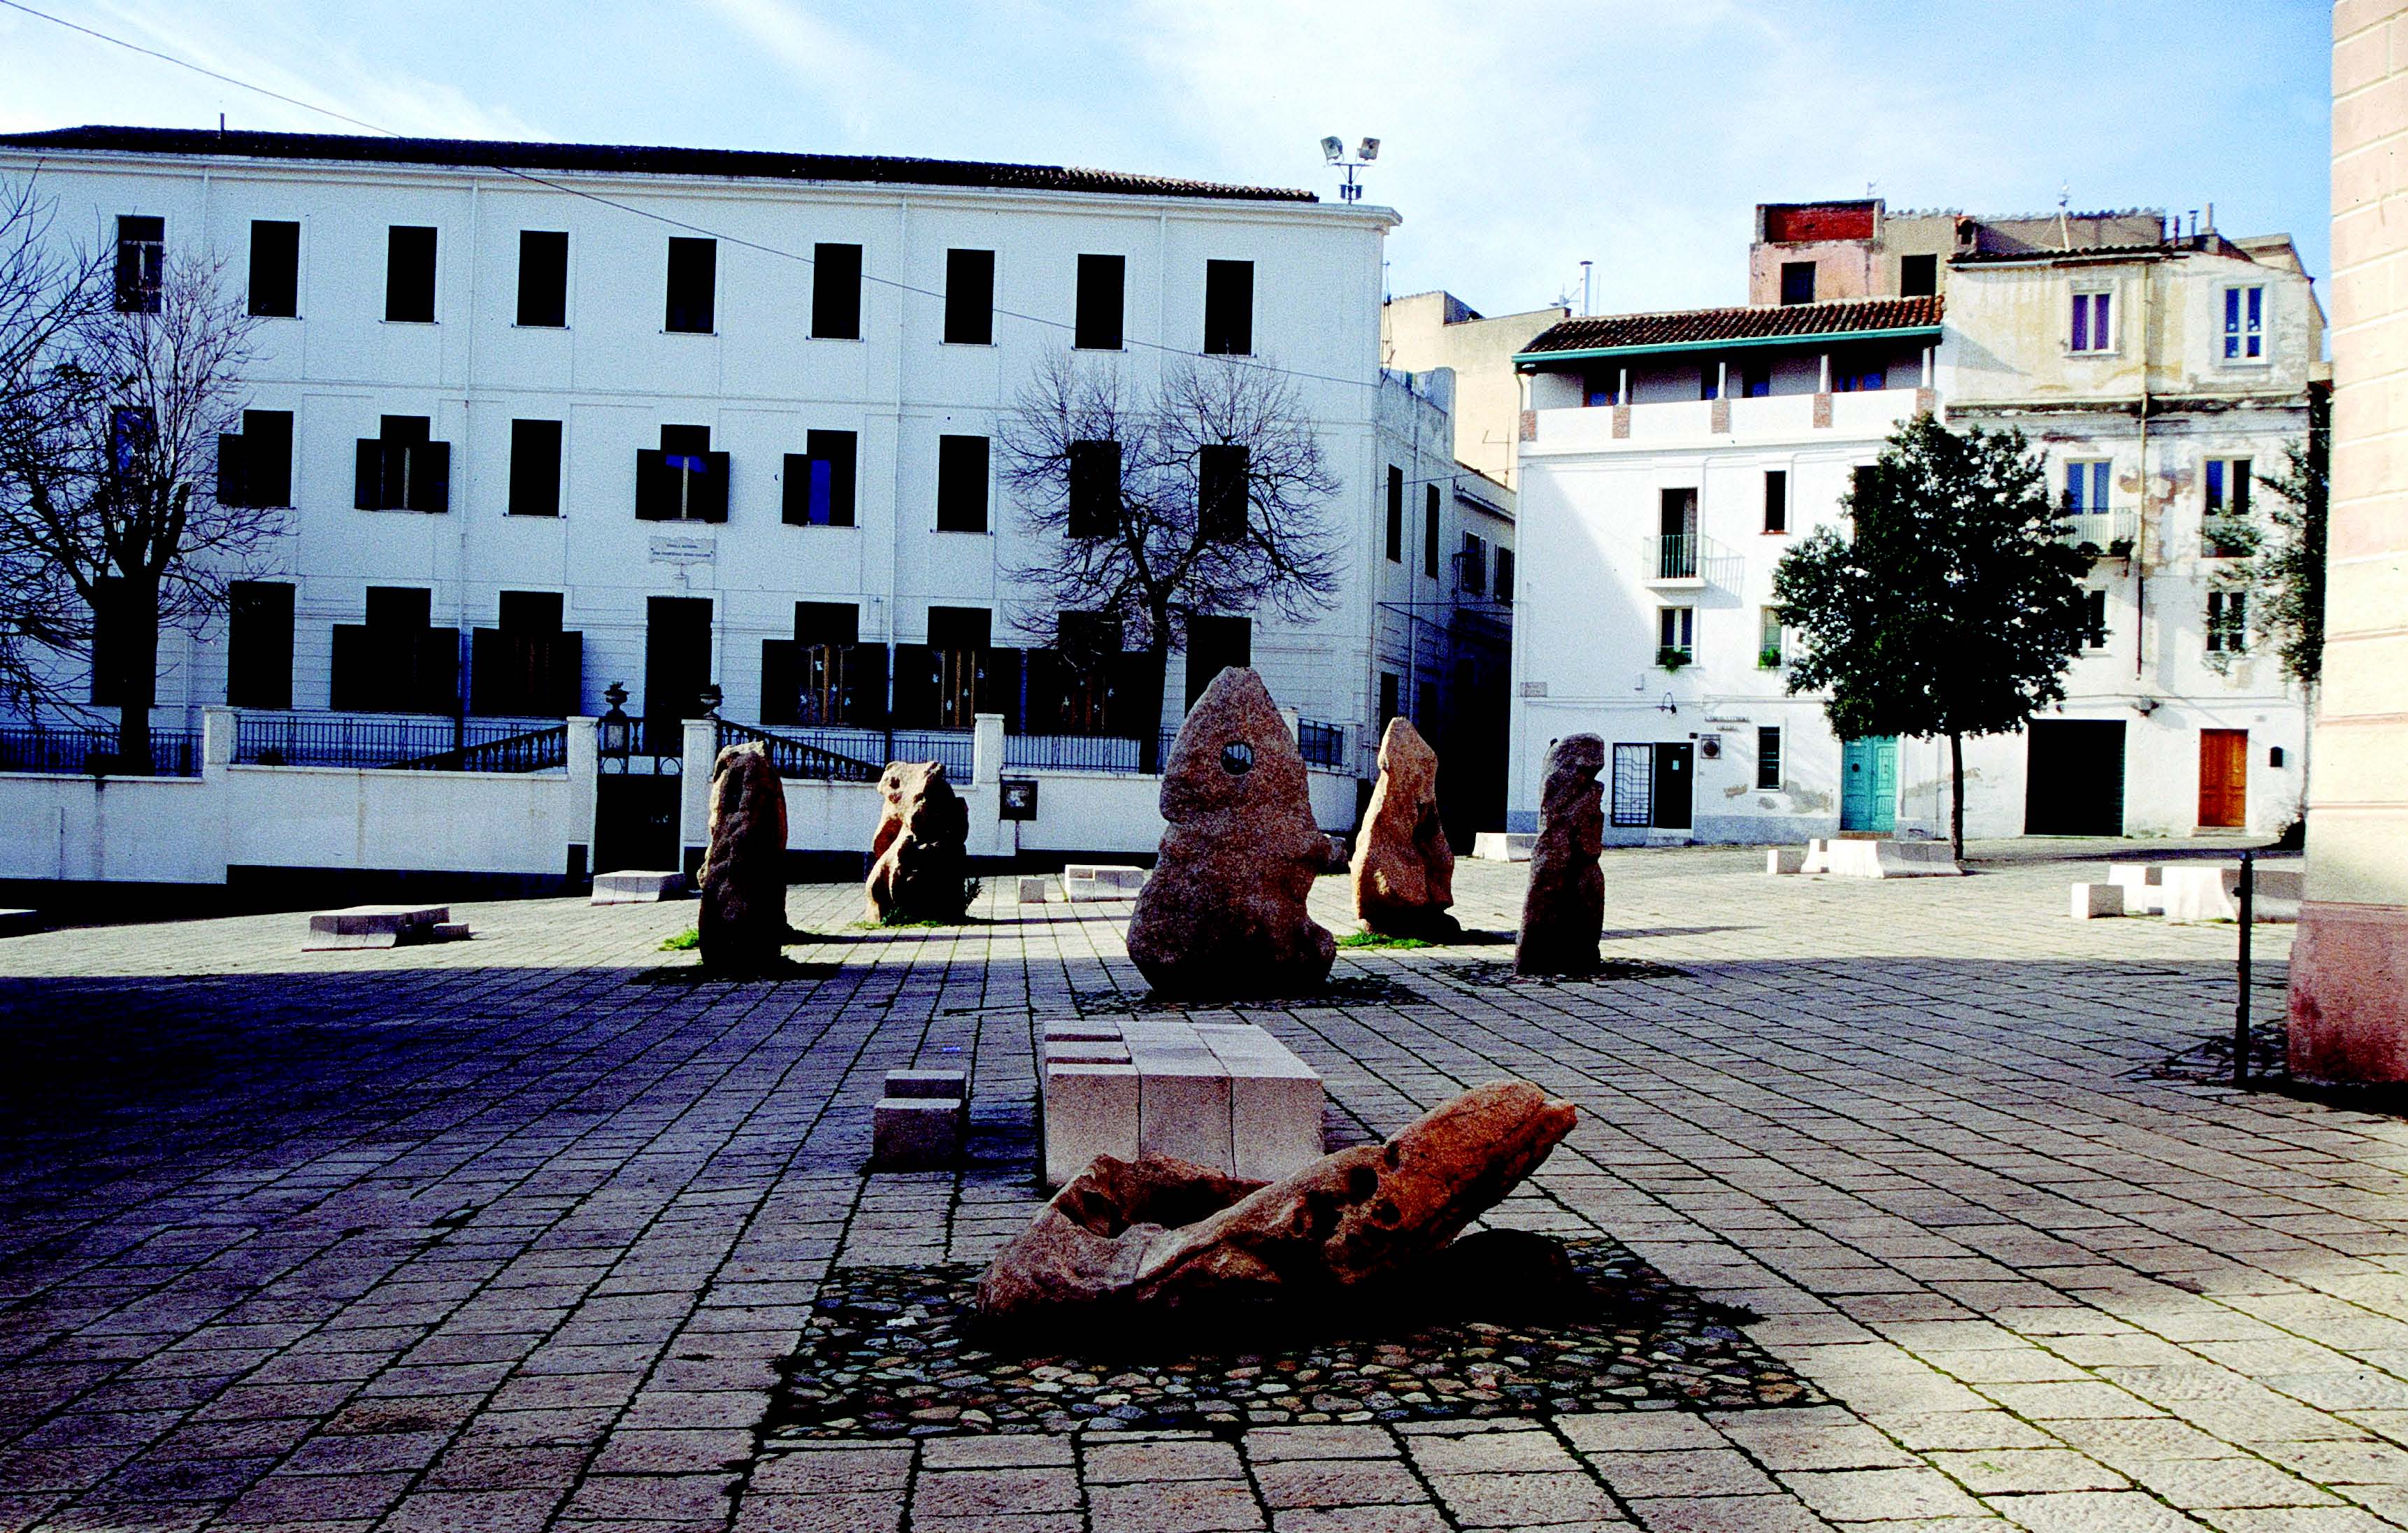 Nuoro,piazza Sebastiano Satta, progettata e realizzata da Costantino Nivola.